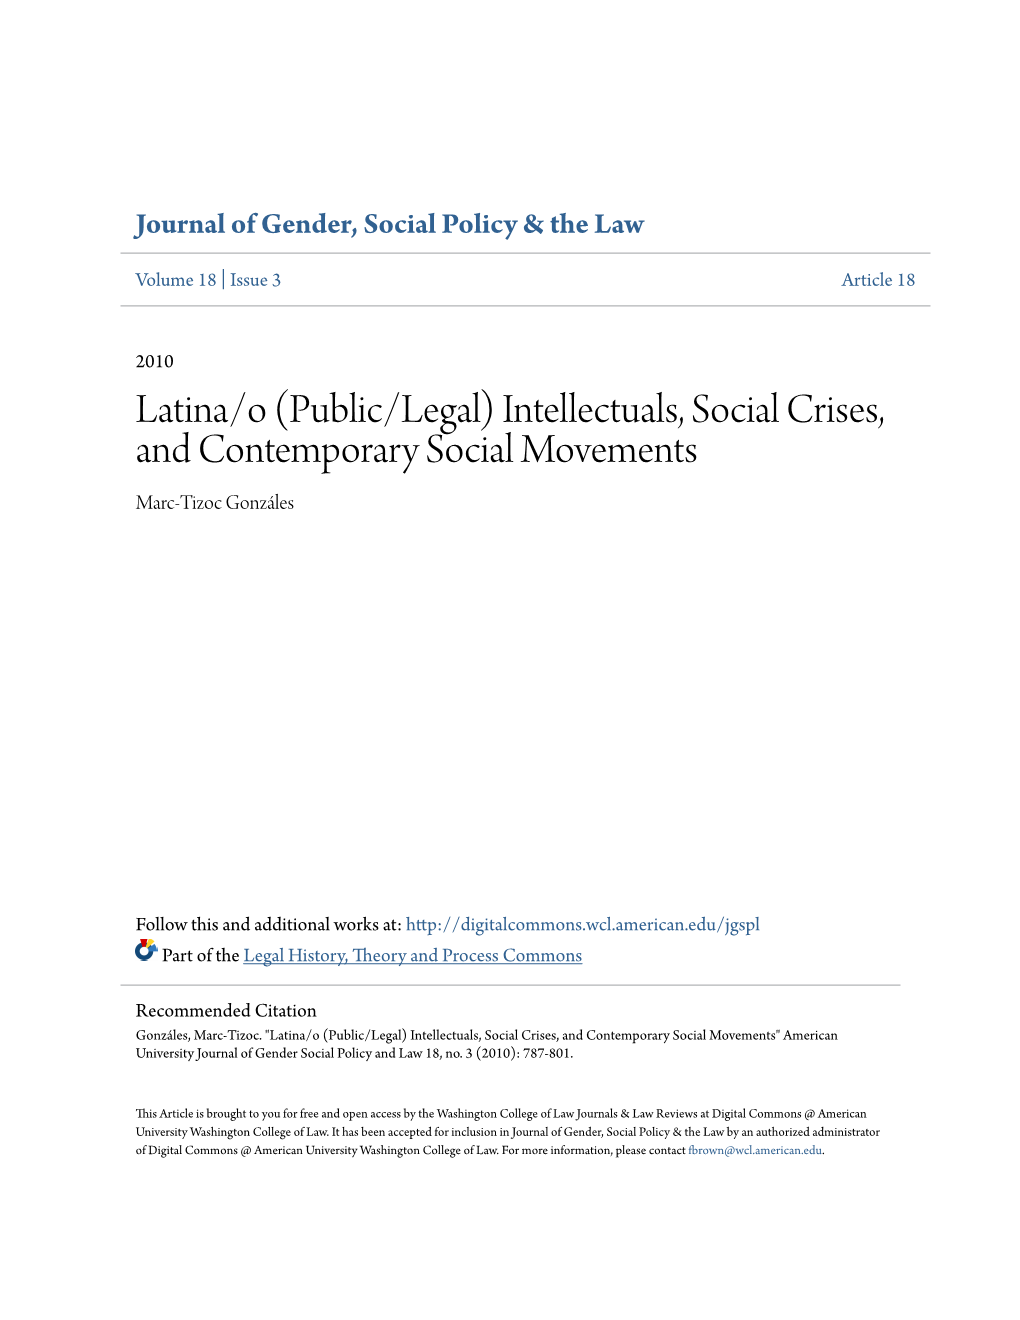 Intellectuals, Social Crises, and Contemporary Social Movements Marc-Tizoc Gonzáles